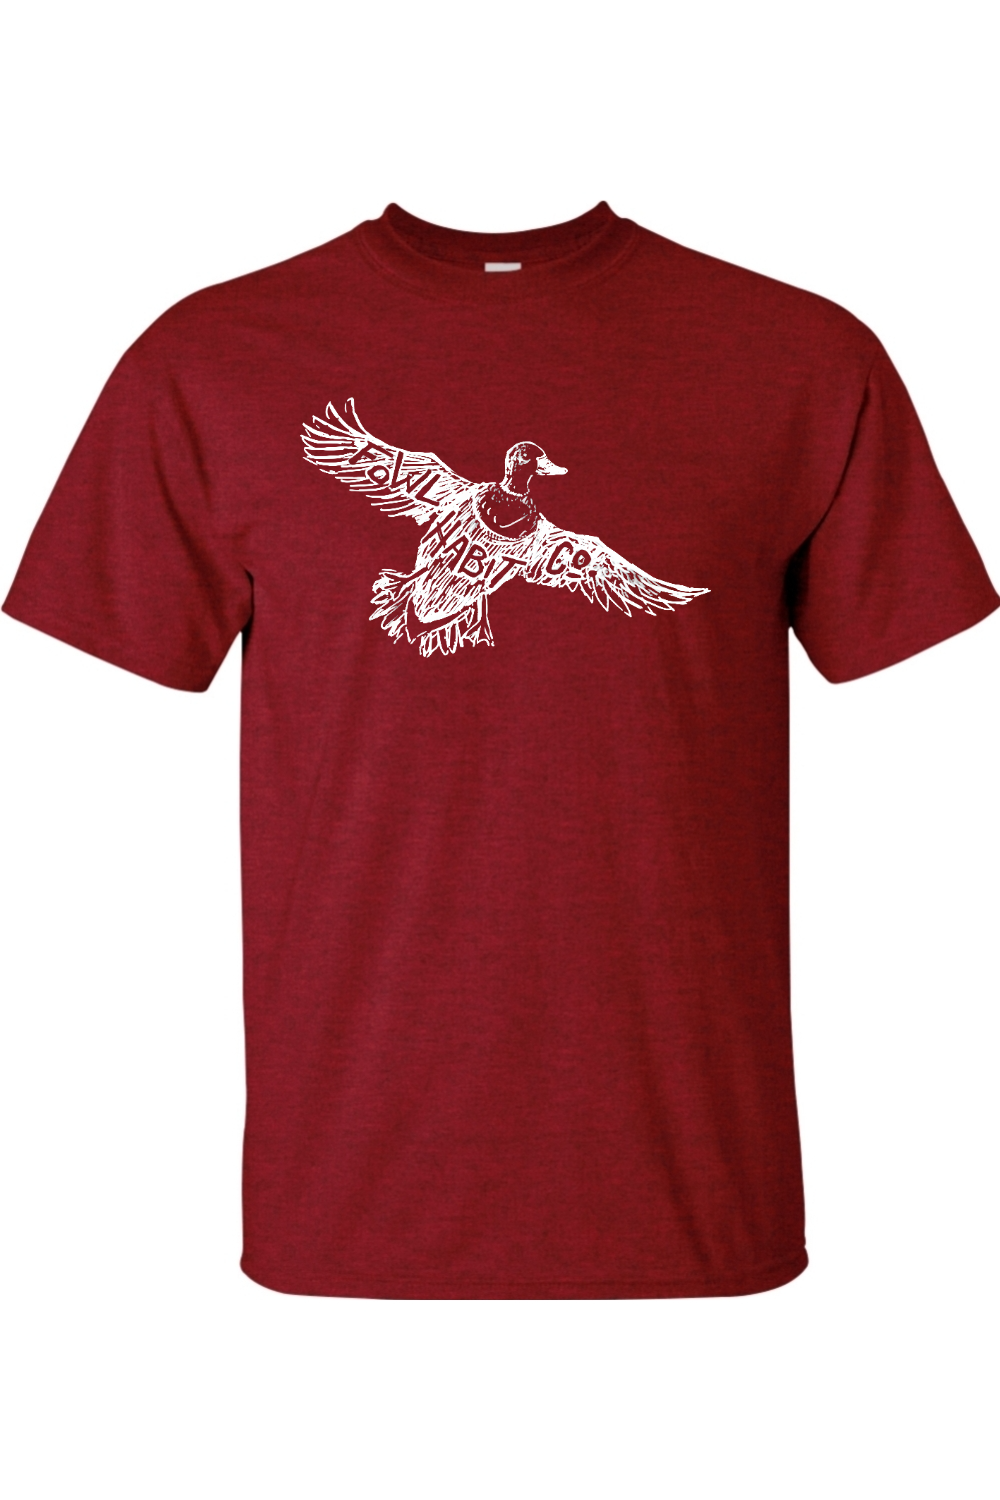 Mallard Drake T-Shirt - Fowl Habit Co.